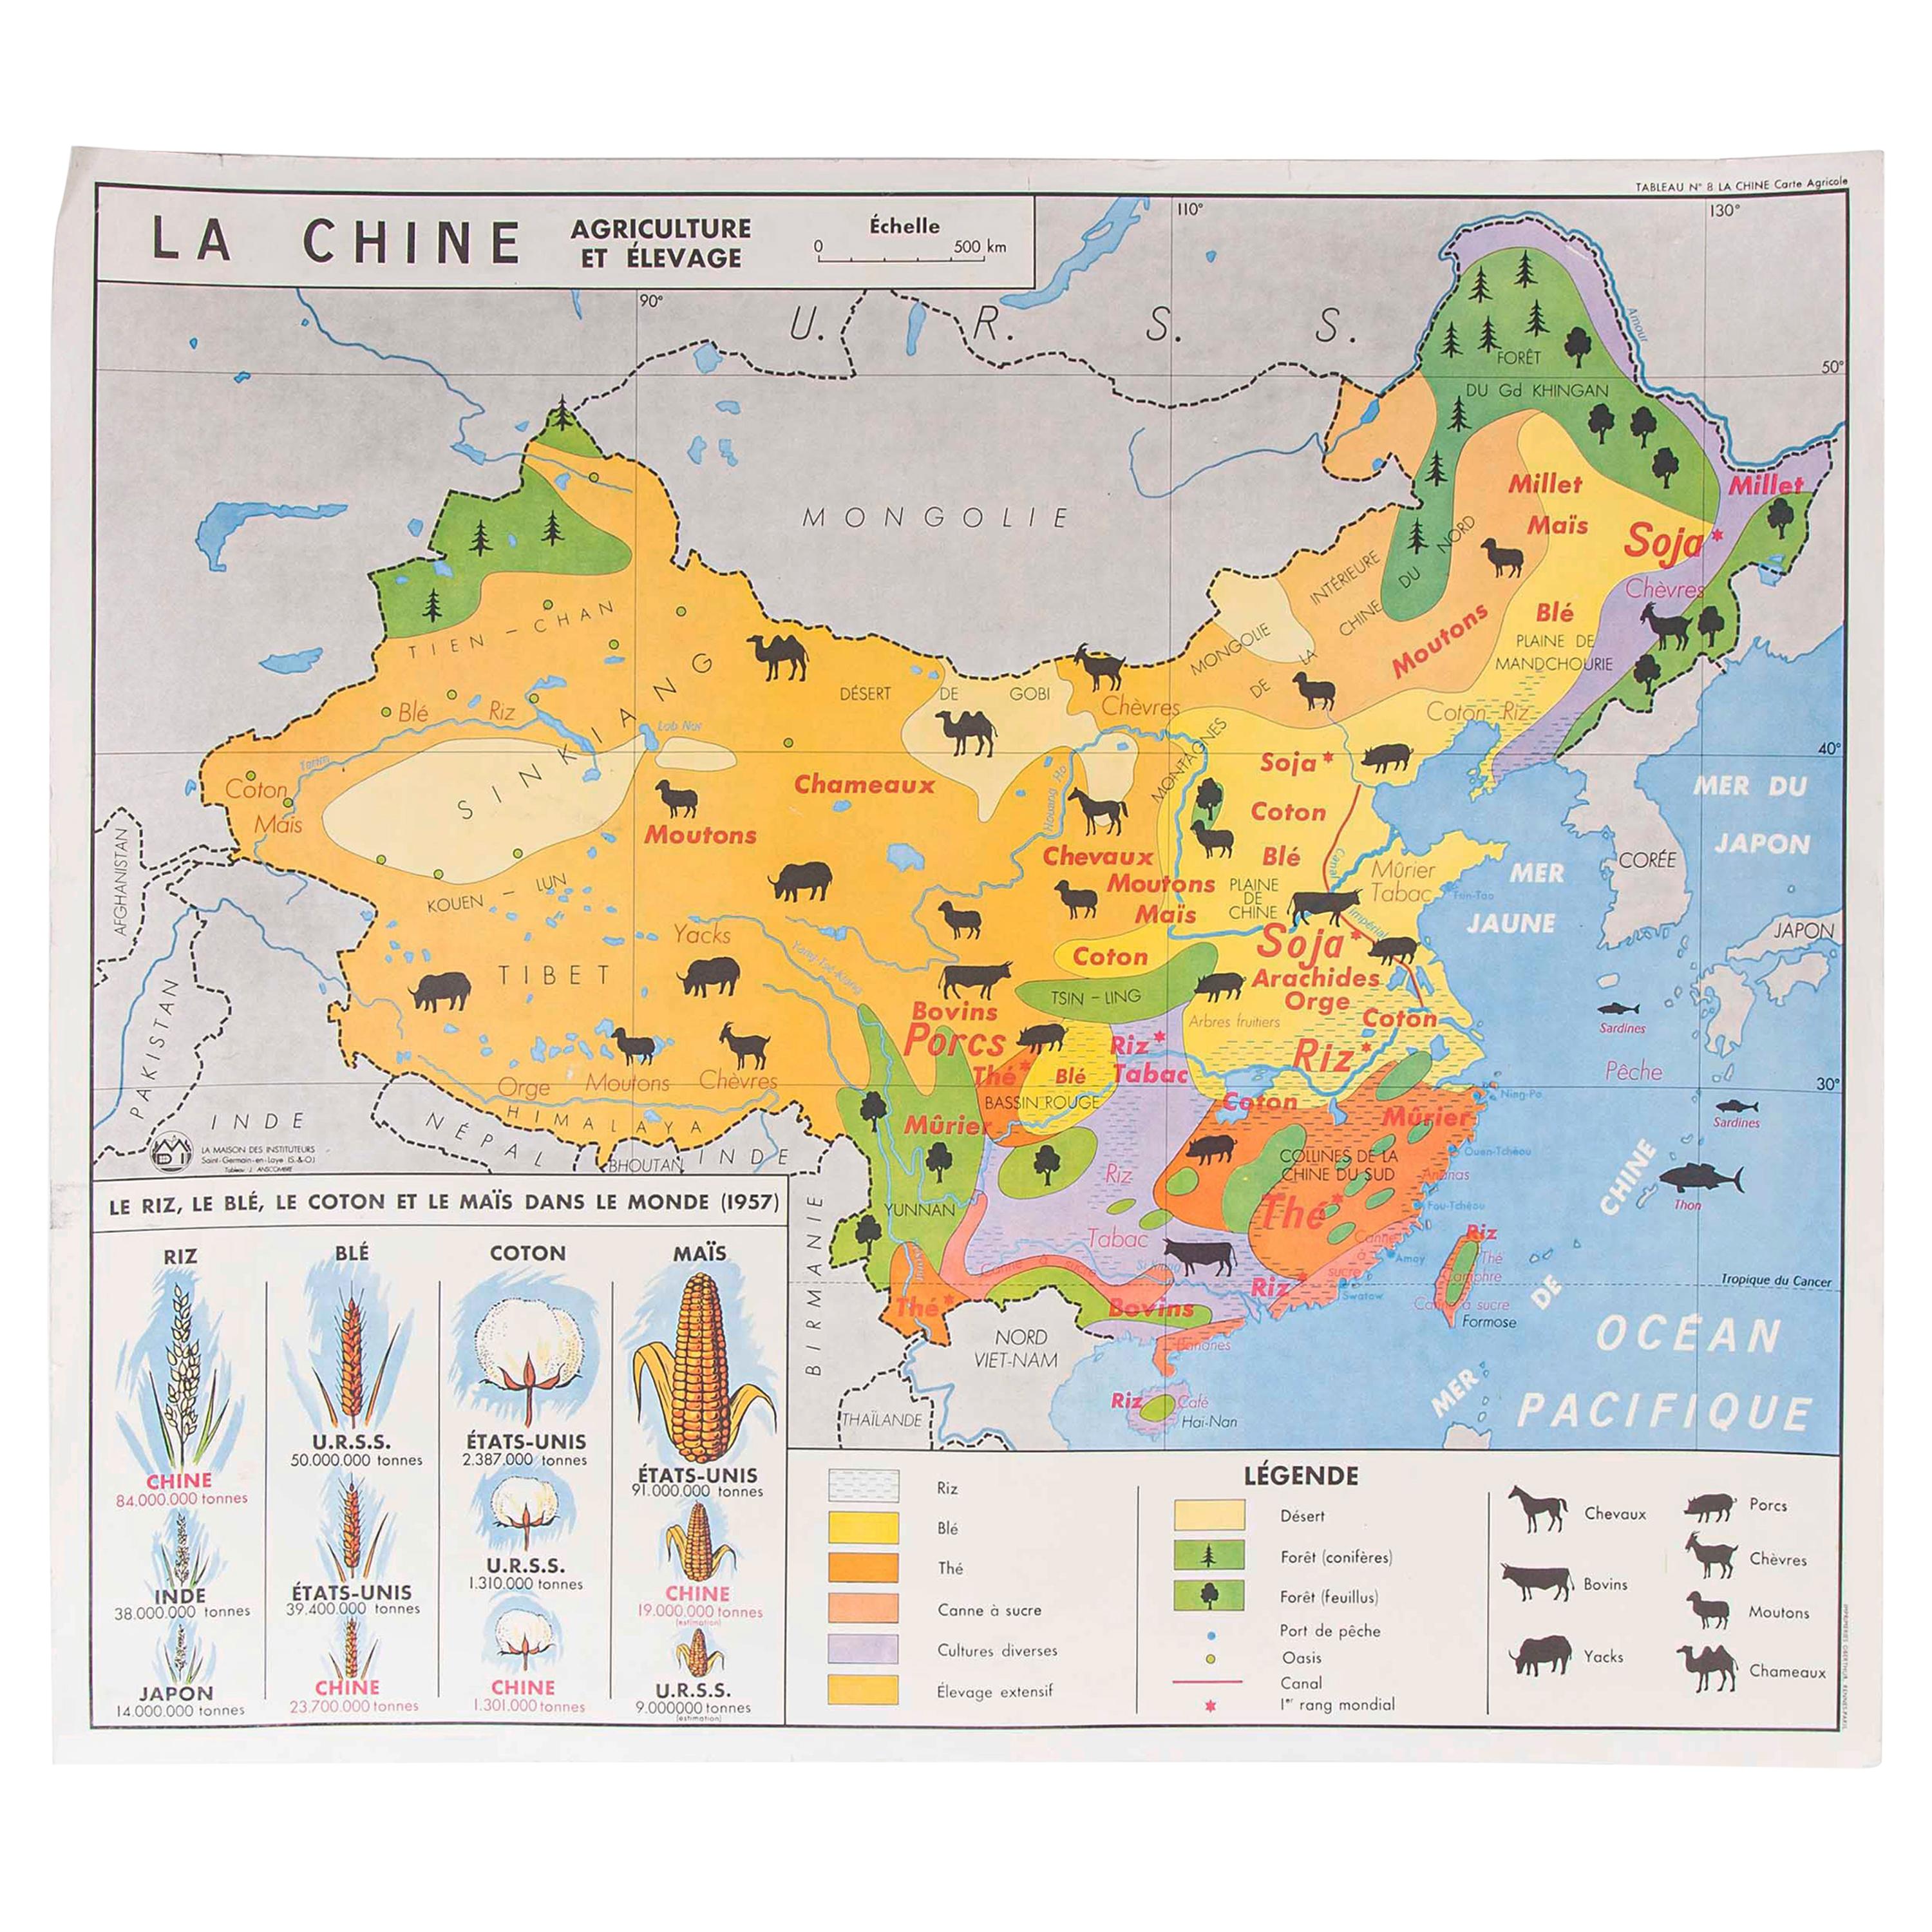 Französisch Doppelseitige pädagogische Schule Poster der Landwirtschaft von China und US